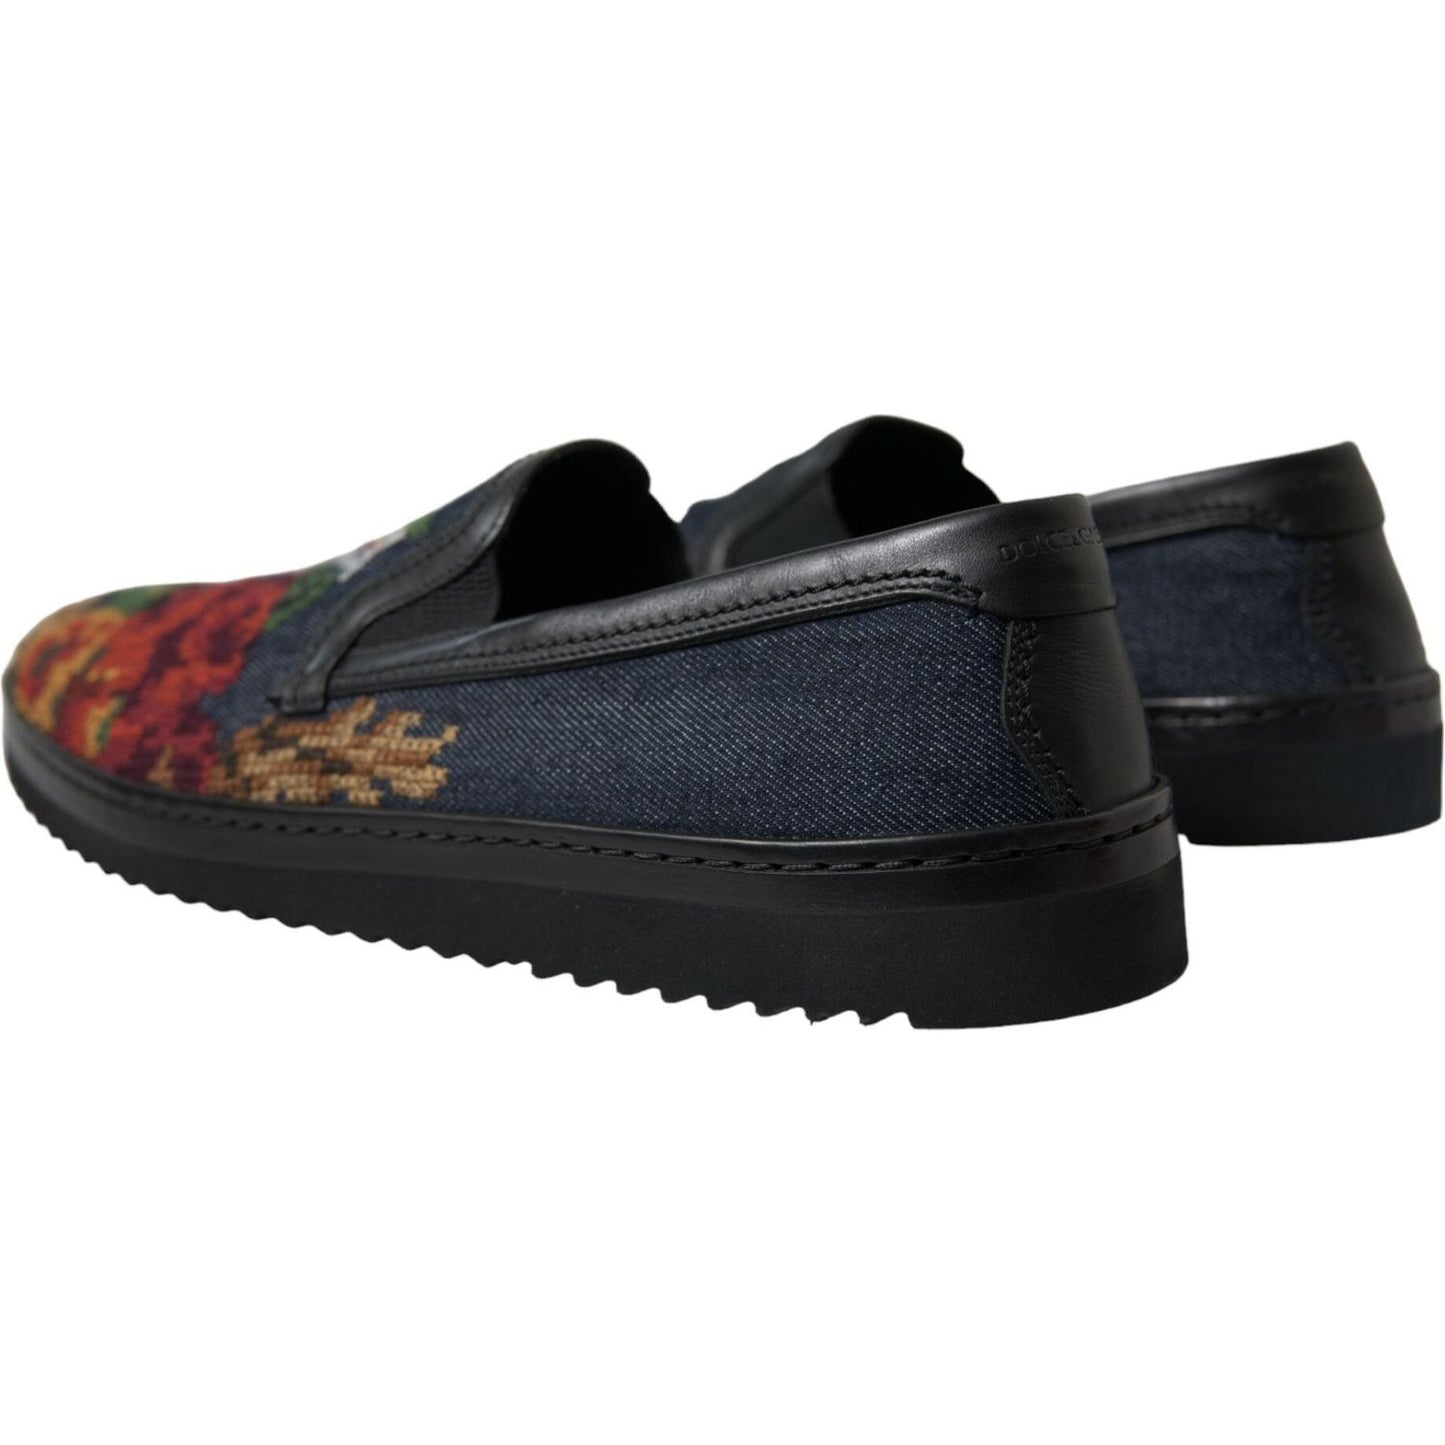 Dolce & Gabbana Elegant Multicolor Floral Loafers multicolor-floral-slippers-men-loafers-shoes